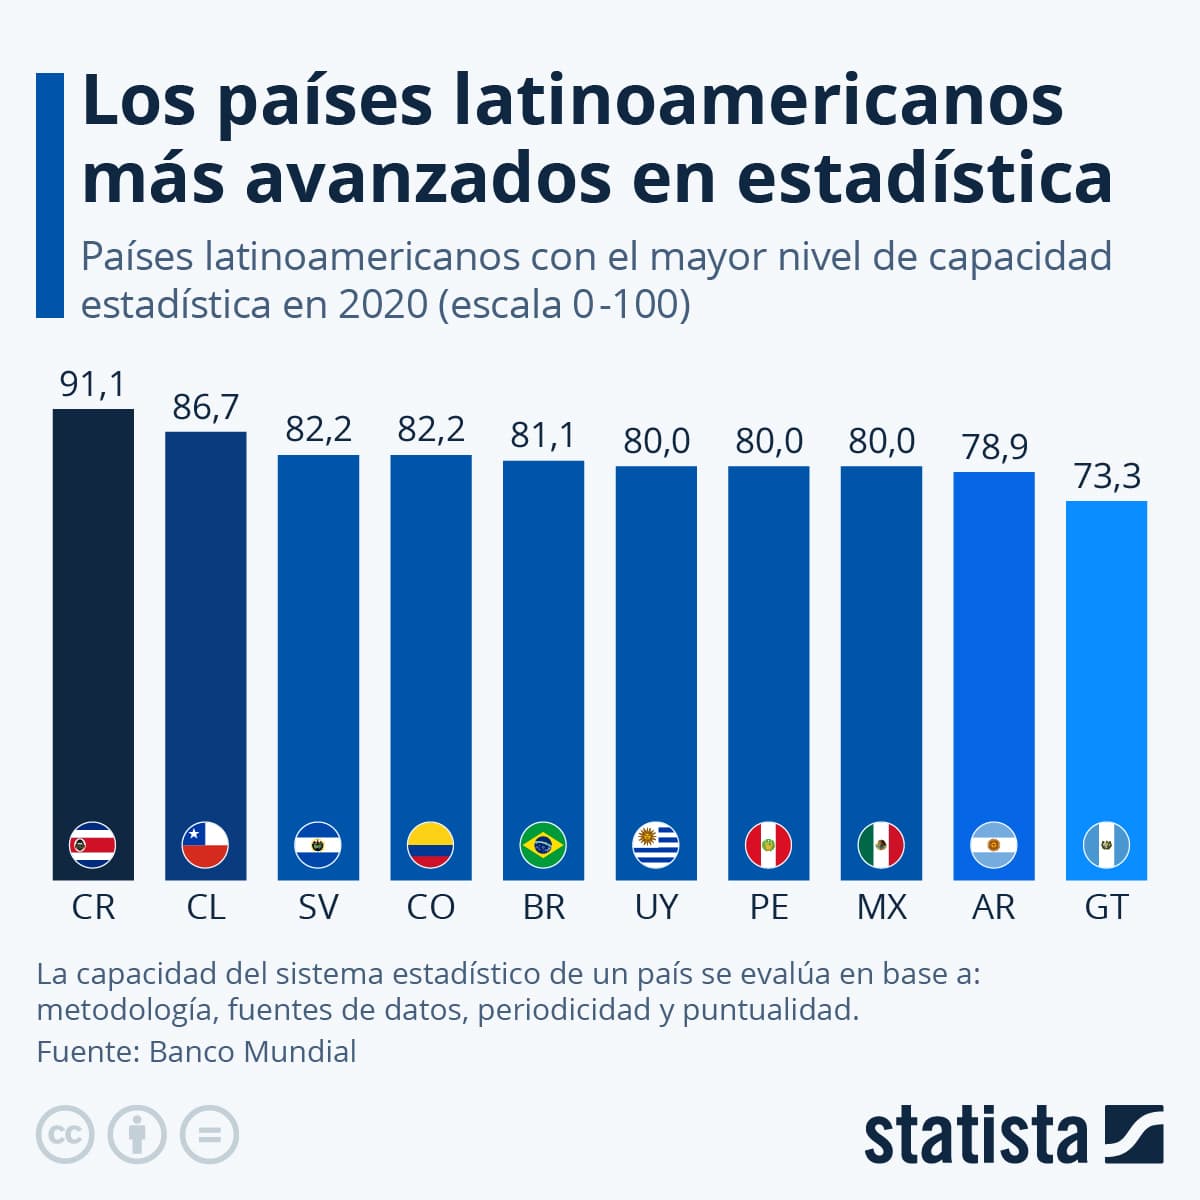 Gráfico. Los países latinoamericanos más avanzados en estadística en 2020. Fuente: Banco Mundial. Diseño: Statista.